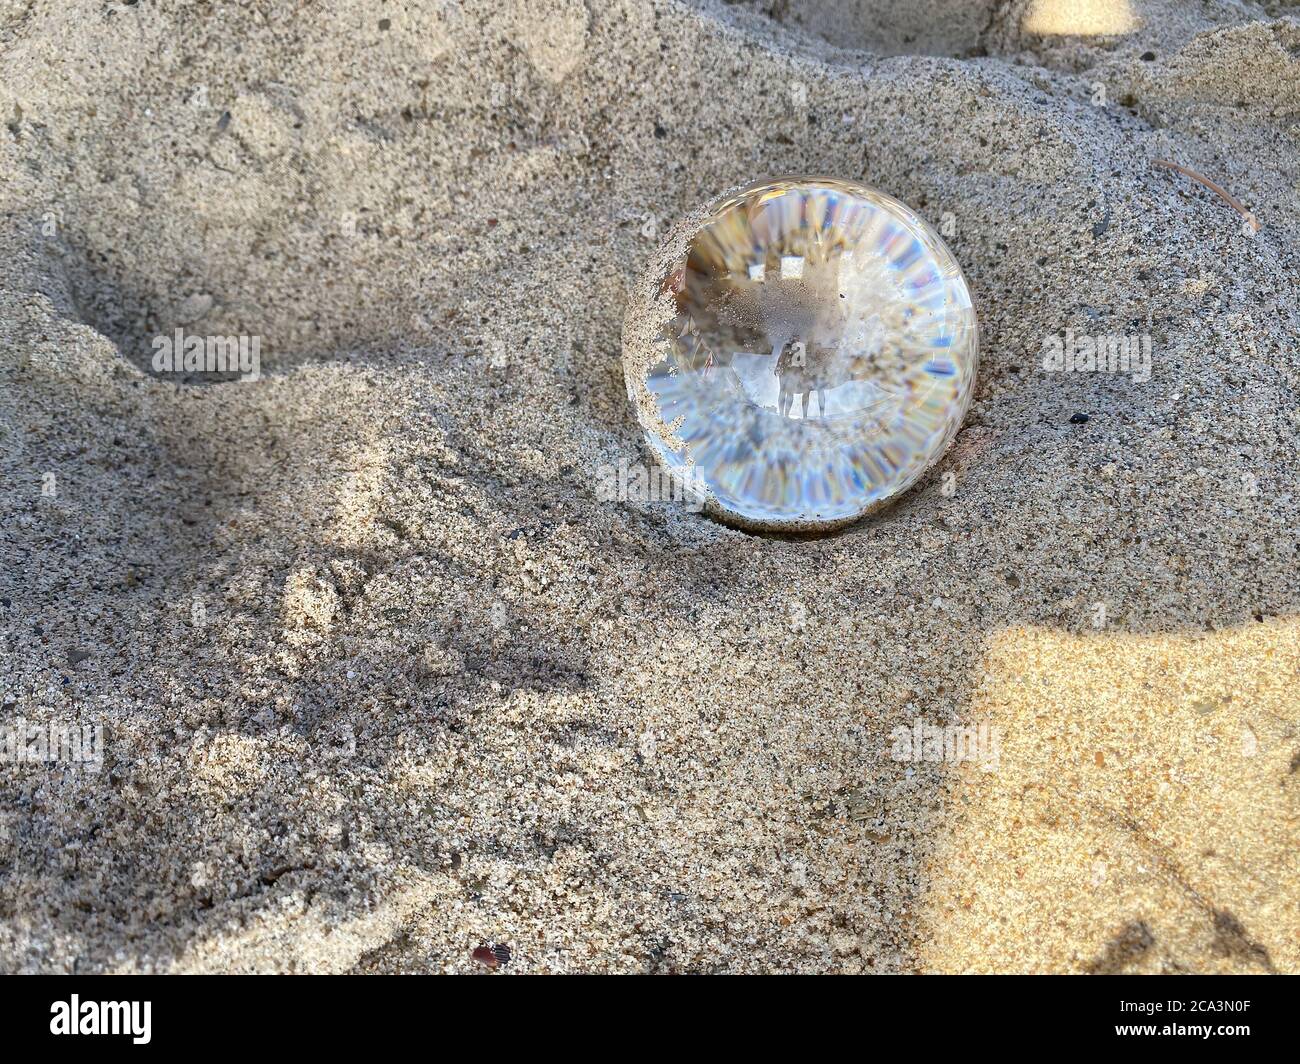 Petite méduse transparente sur le sable close up Photo Stock - Alamy